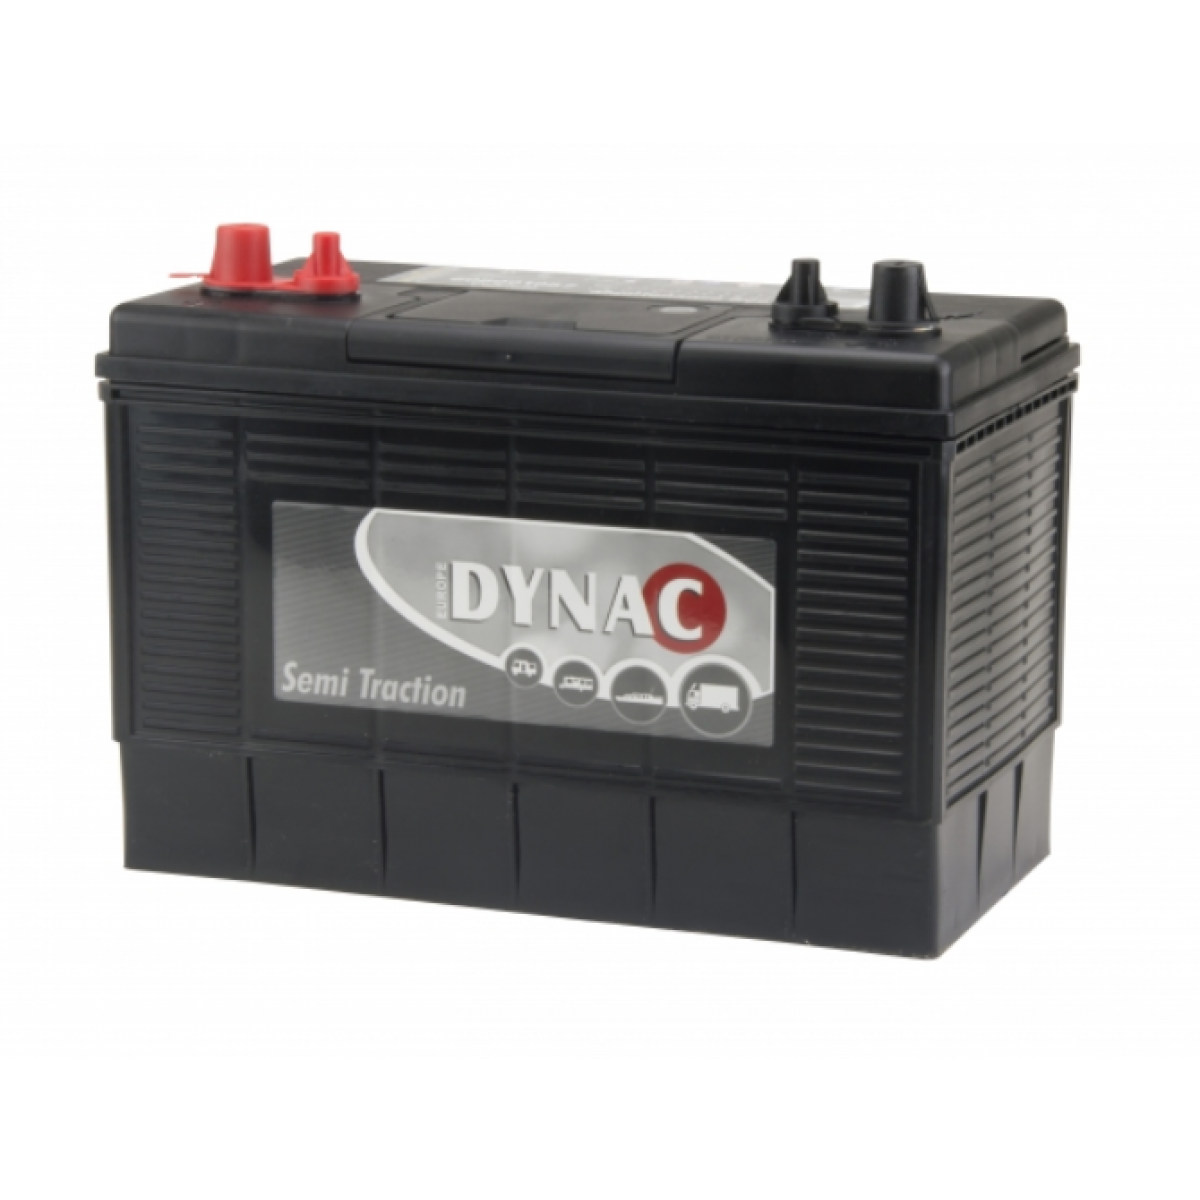 Dynac Semi Tractie STV 31DC Start 12V